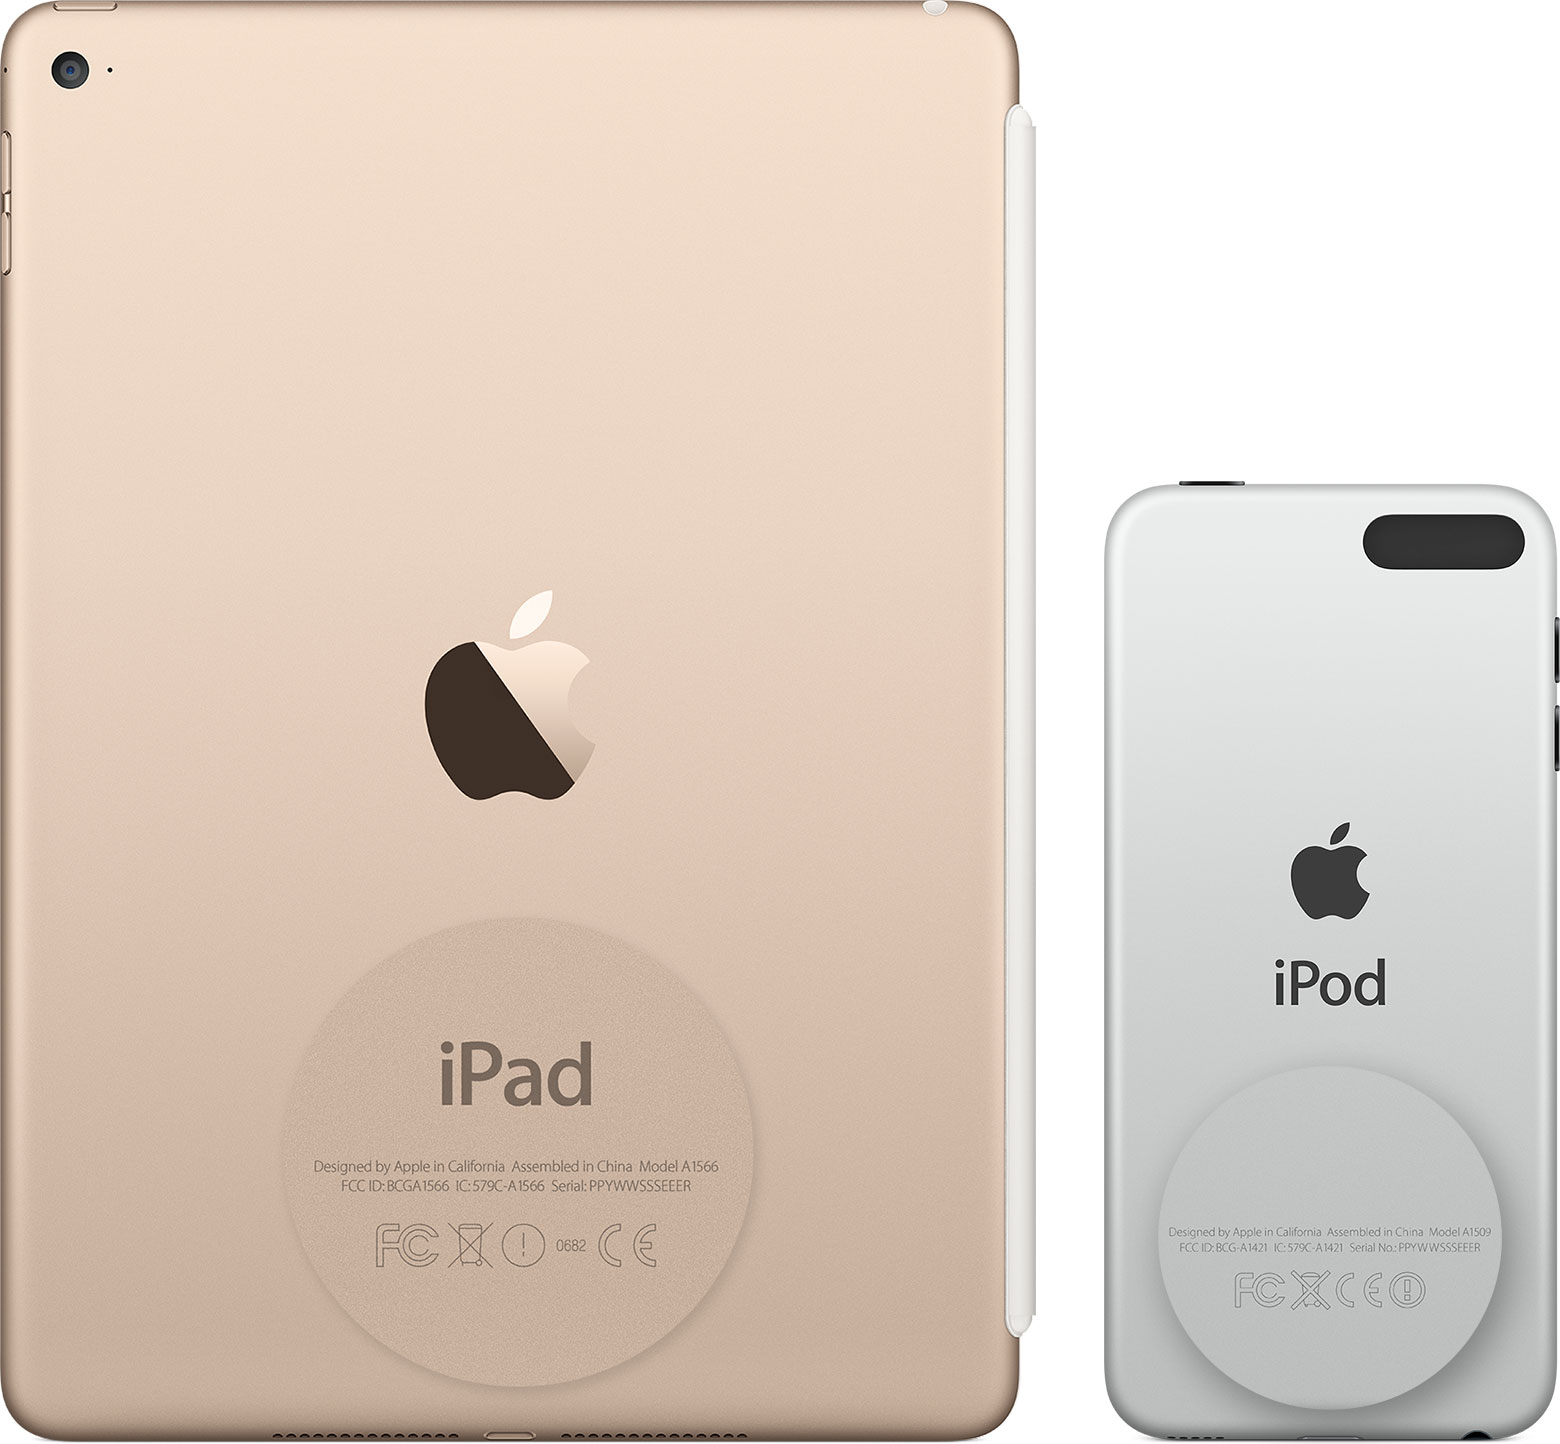  Temukan nomor seri iPad Pro, iPad, atau iPod touch di bagian belakang perangkat.